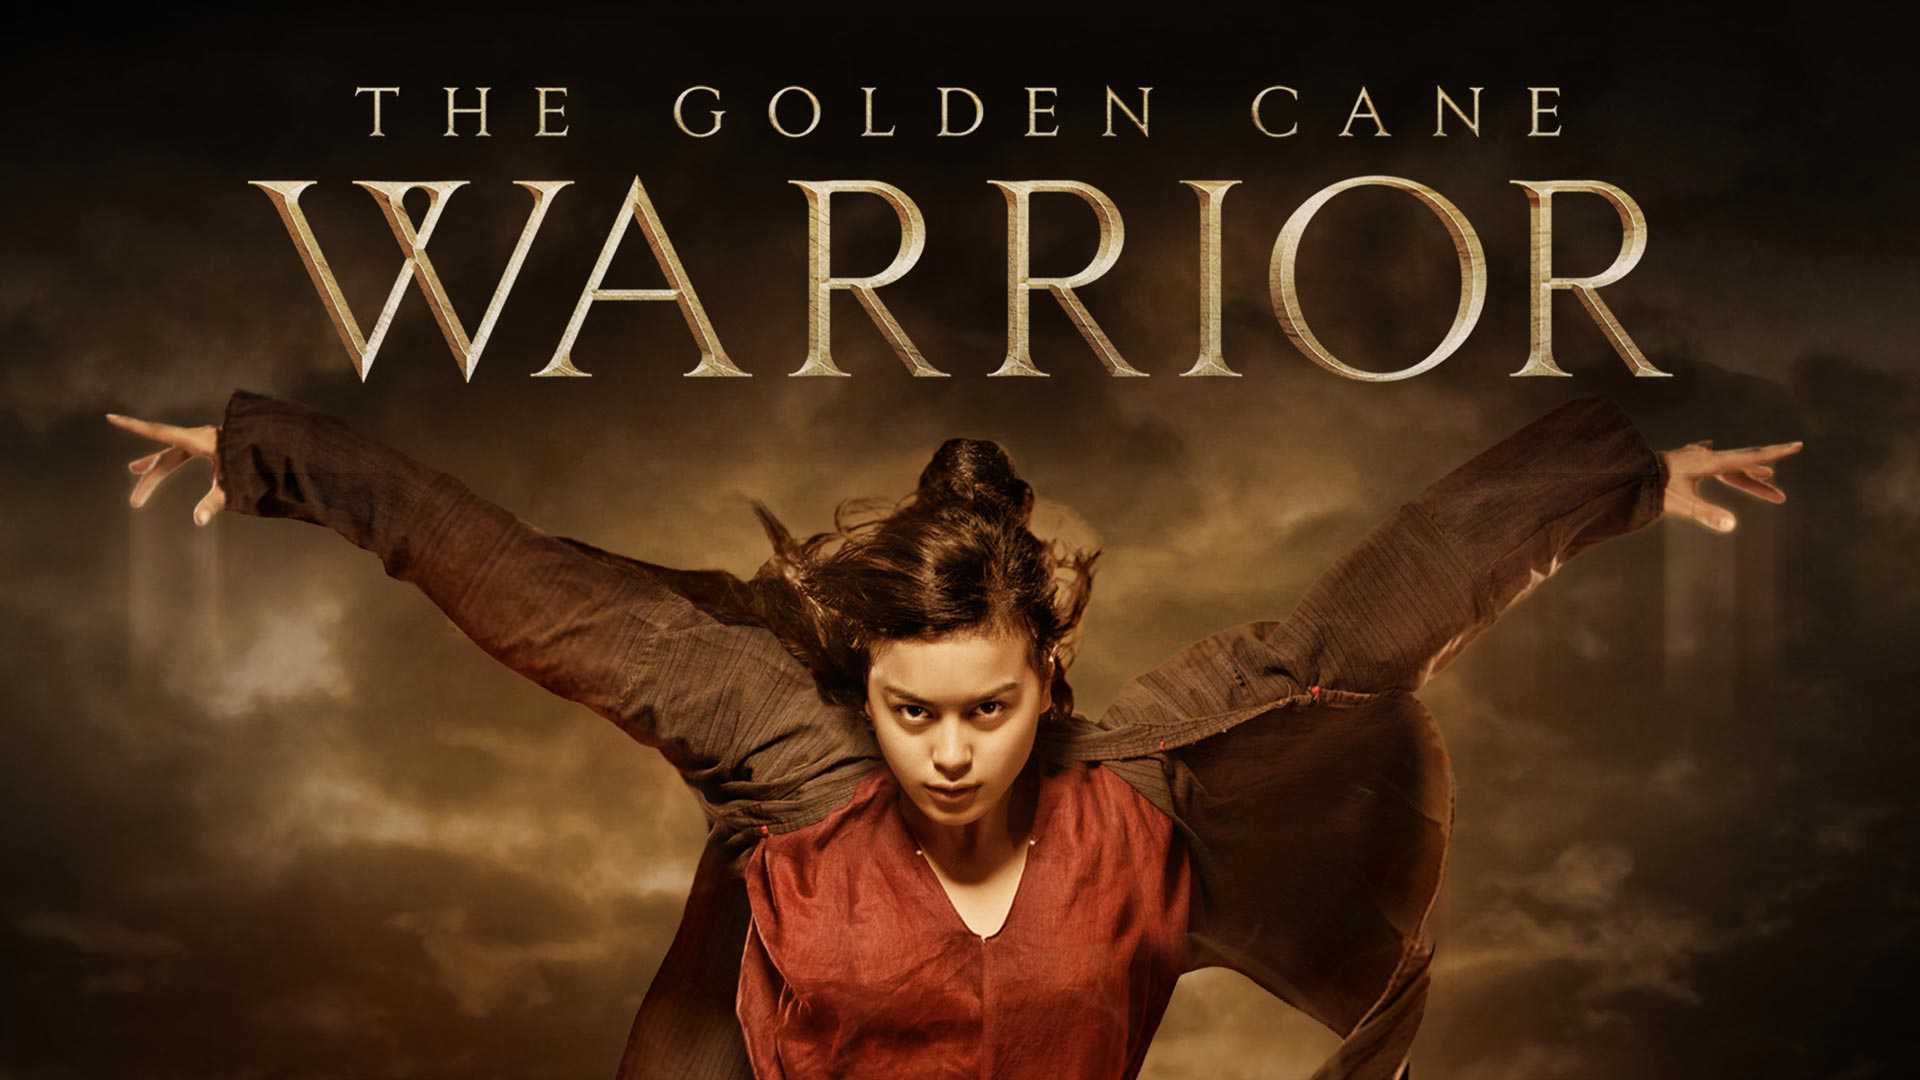 The golden cane warrior - The golden cane warrior